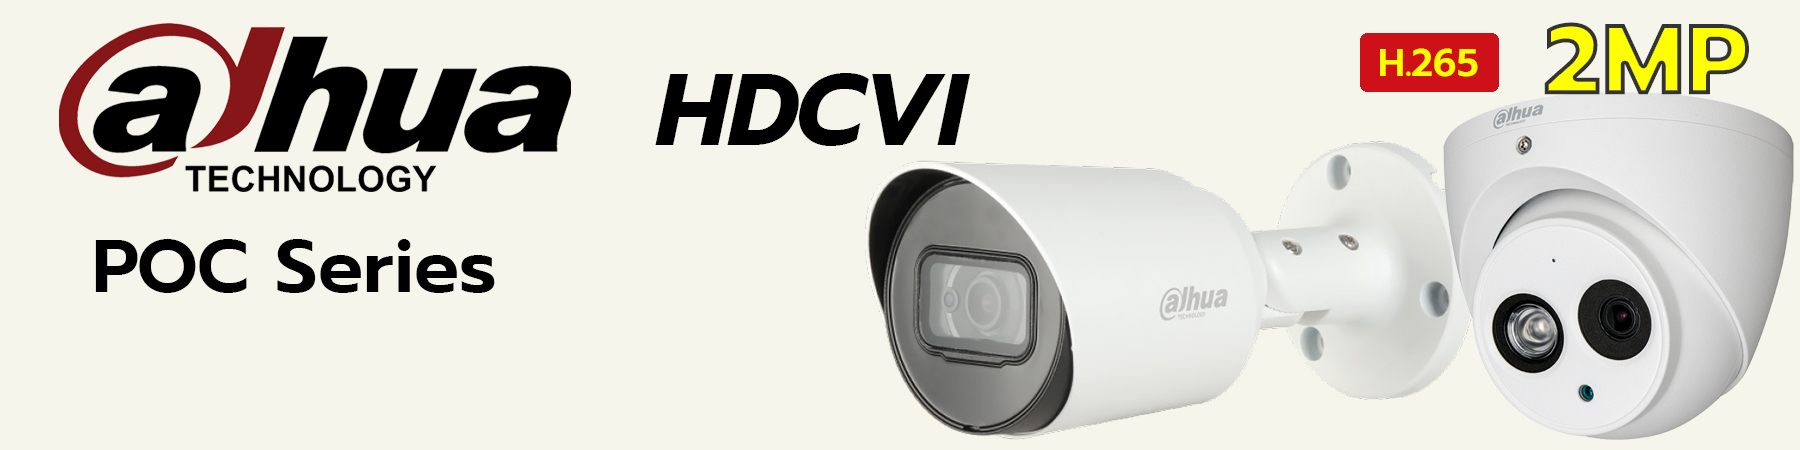 กล้องวงจรปิด Dahua, Dahua HDCVI POC, กล้องวงจรปิด Dahua HDCVI POC, กล้องวงจรปิด Dahua มีไมค์ POC, HAC-HFW1200T-A-POC, HAC-HDW1200EM-A-POC, HAC-HFW1200T-A-POC ราคา, HAC-HDW1200EM-A-POC ราคา